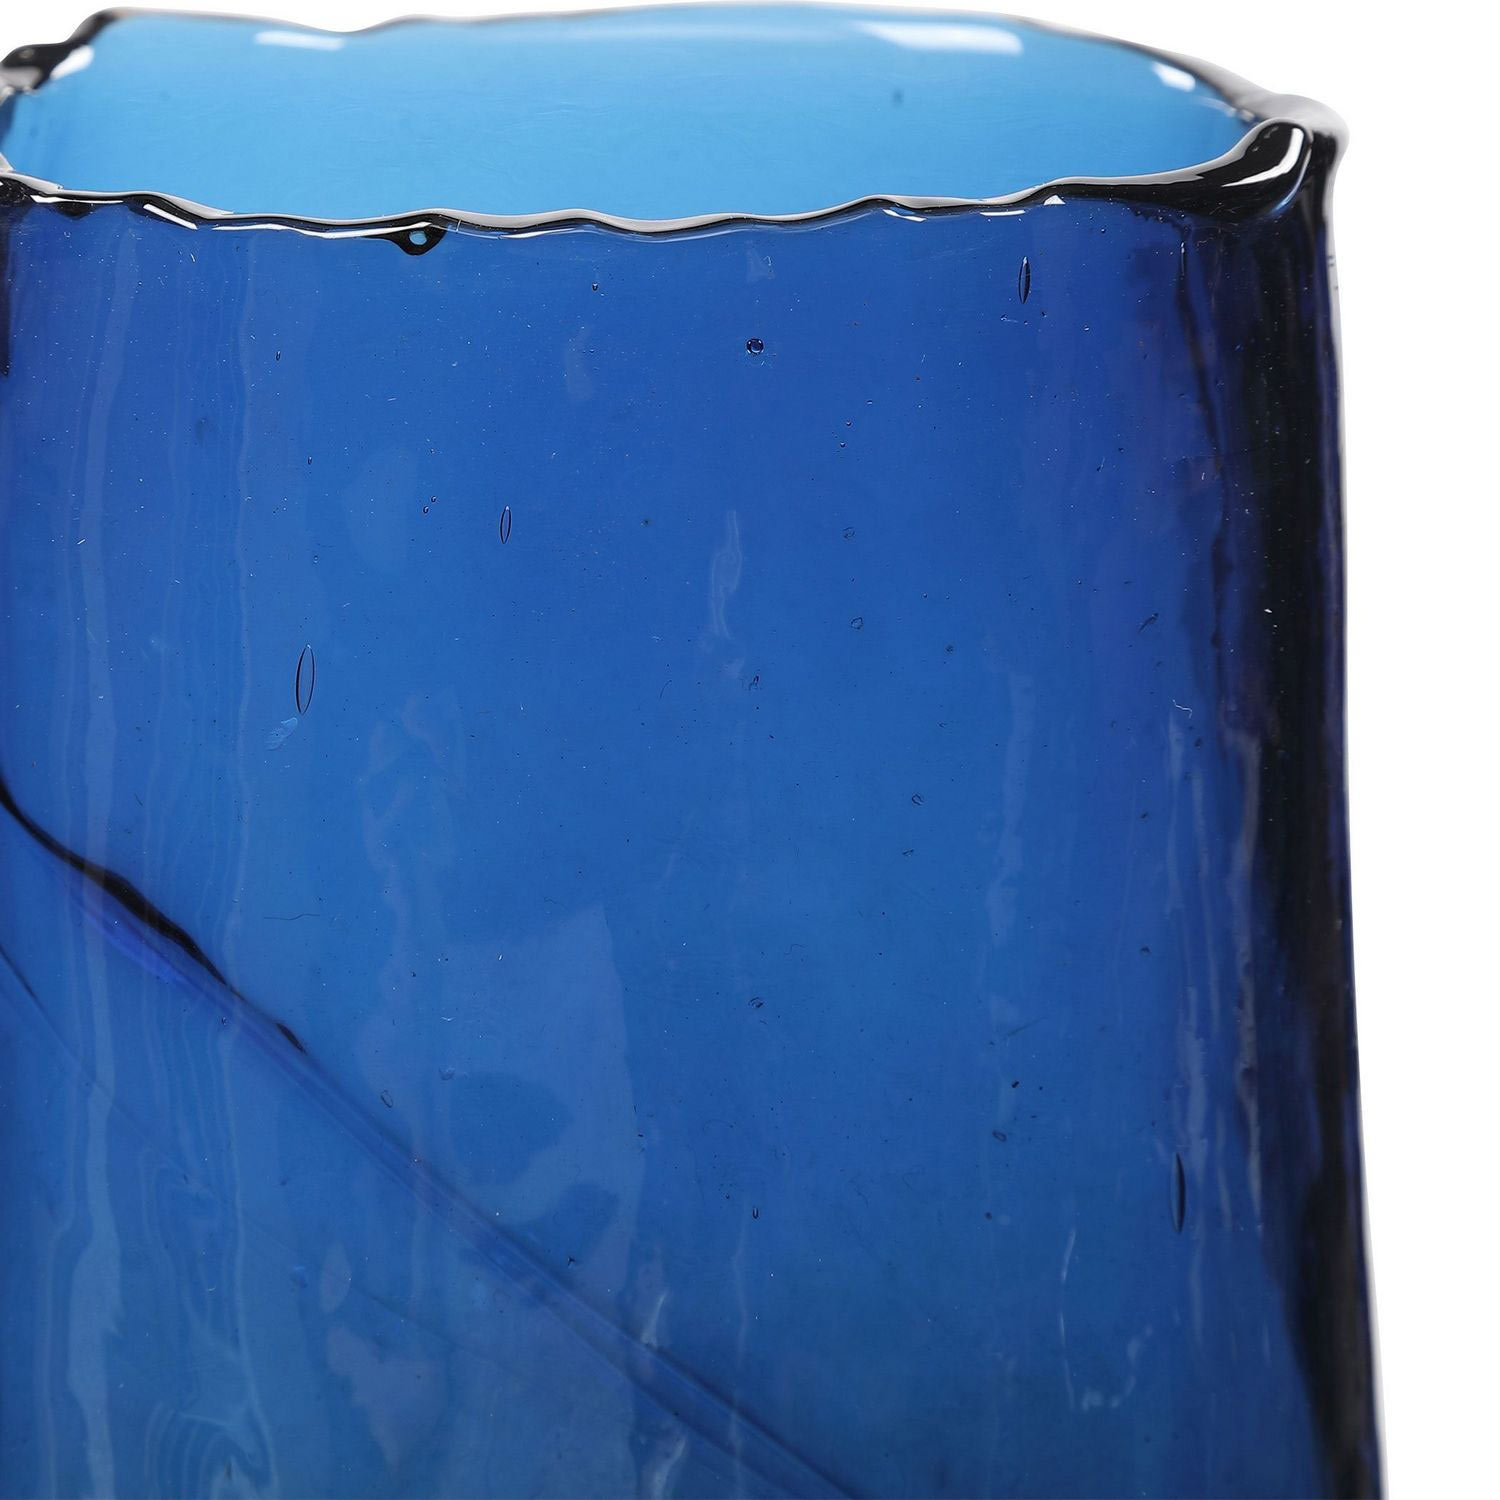 Uttermost Capri Cobalt Glass Vases - Set of 2 - Blue